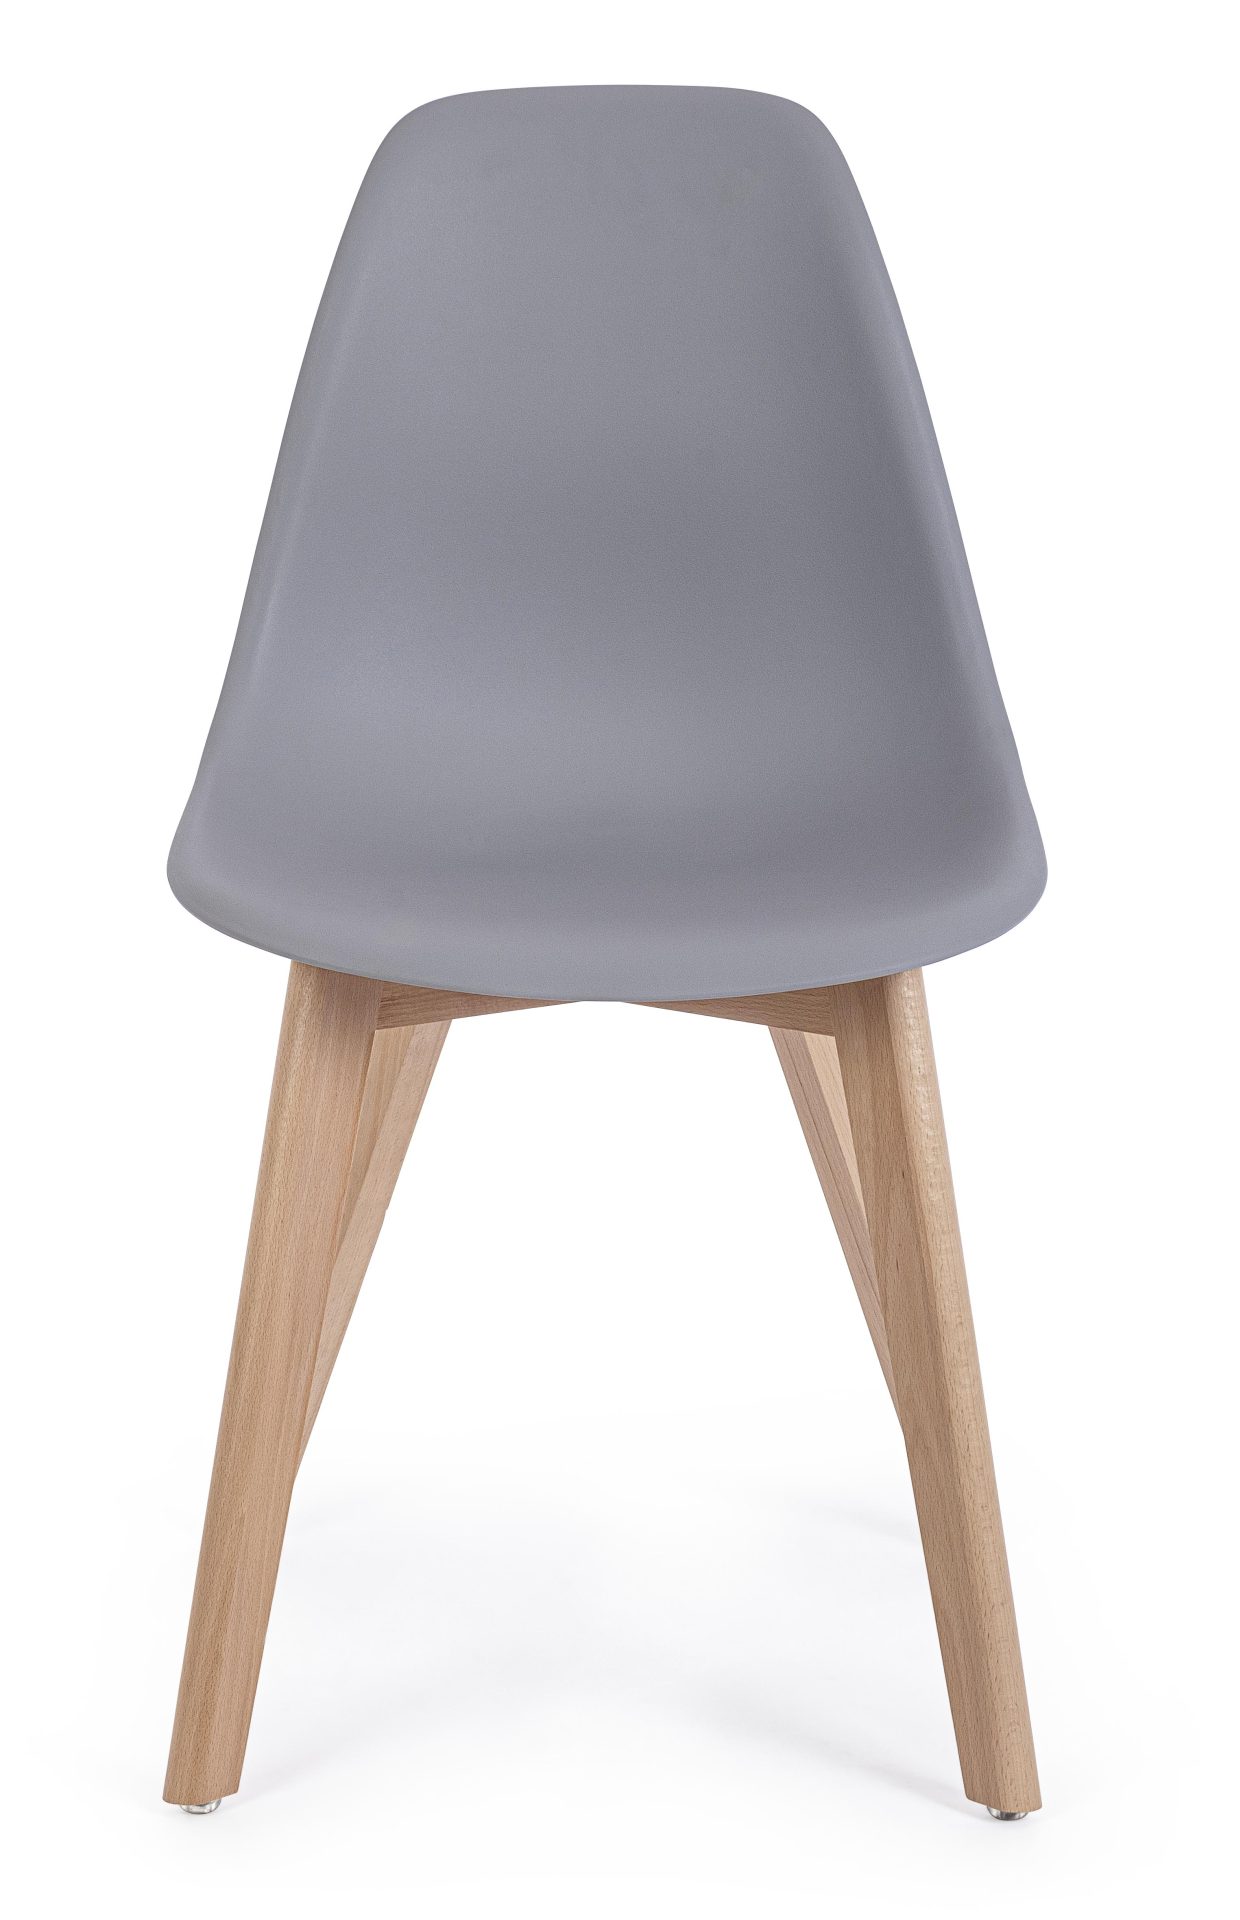 Der Stuhl System überzeugt mit seinem modernem Design. Gefertigt wurde der Stuhl aus Kunststoff, welcher einen grauen Farbton besitzt. Das Gestell ist aus Buchenholz. Die Sitzhöhe des Stuhls ist 46 cm